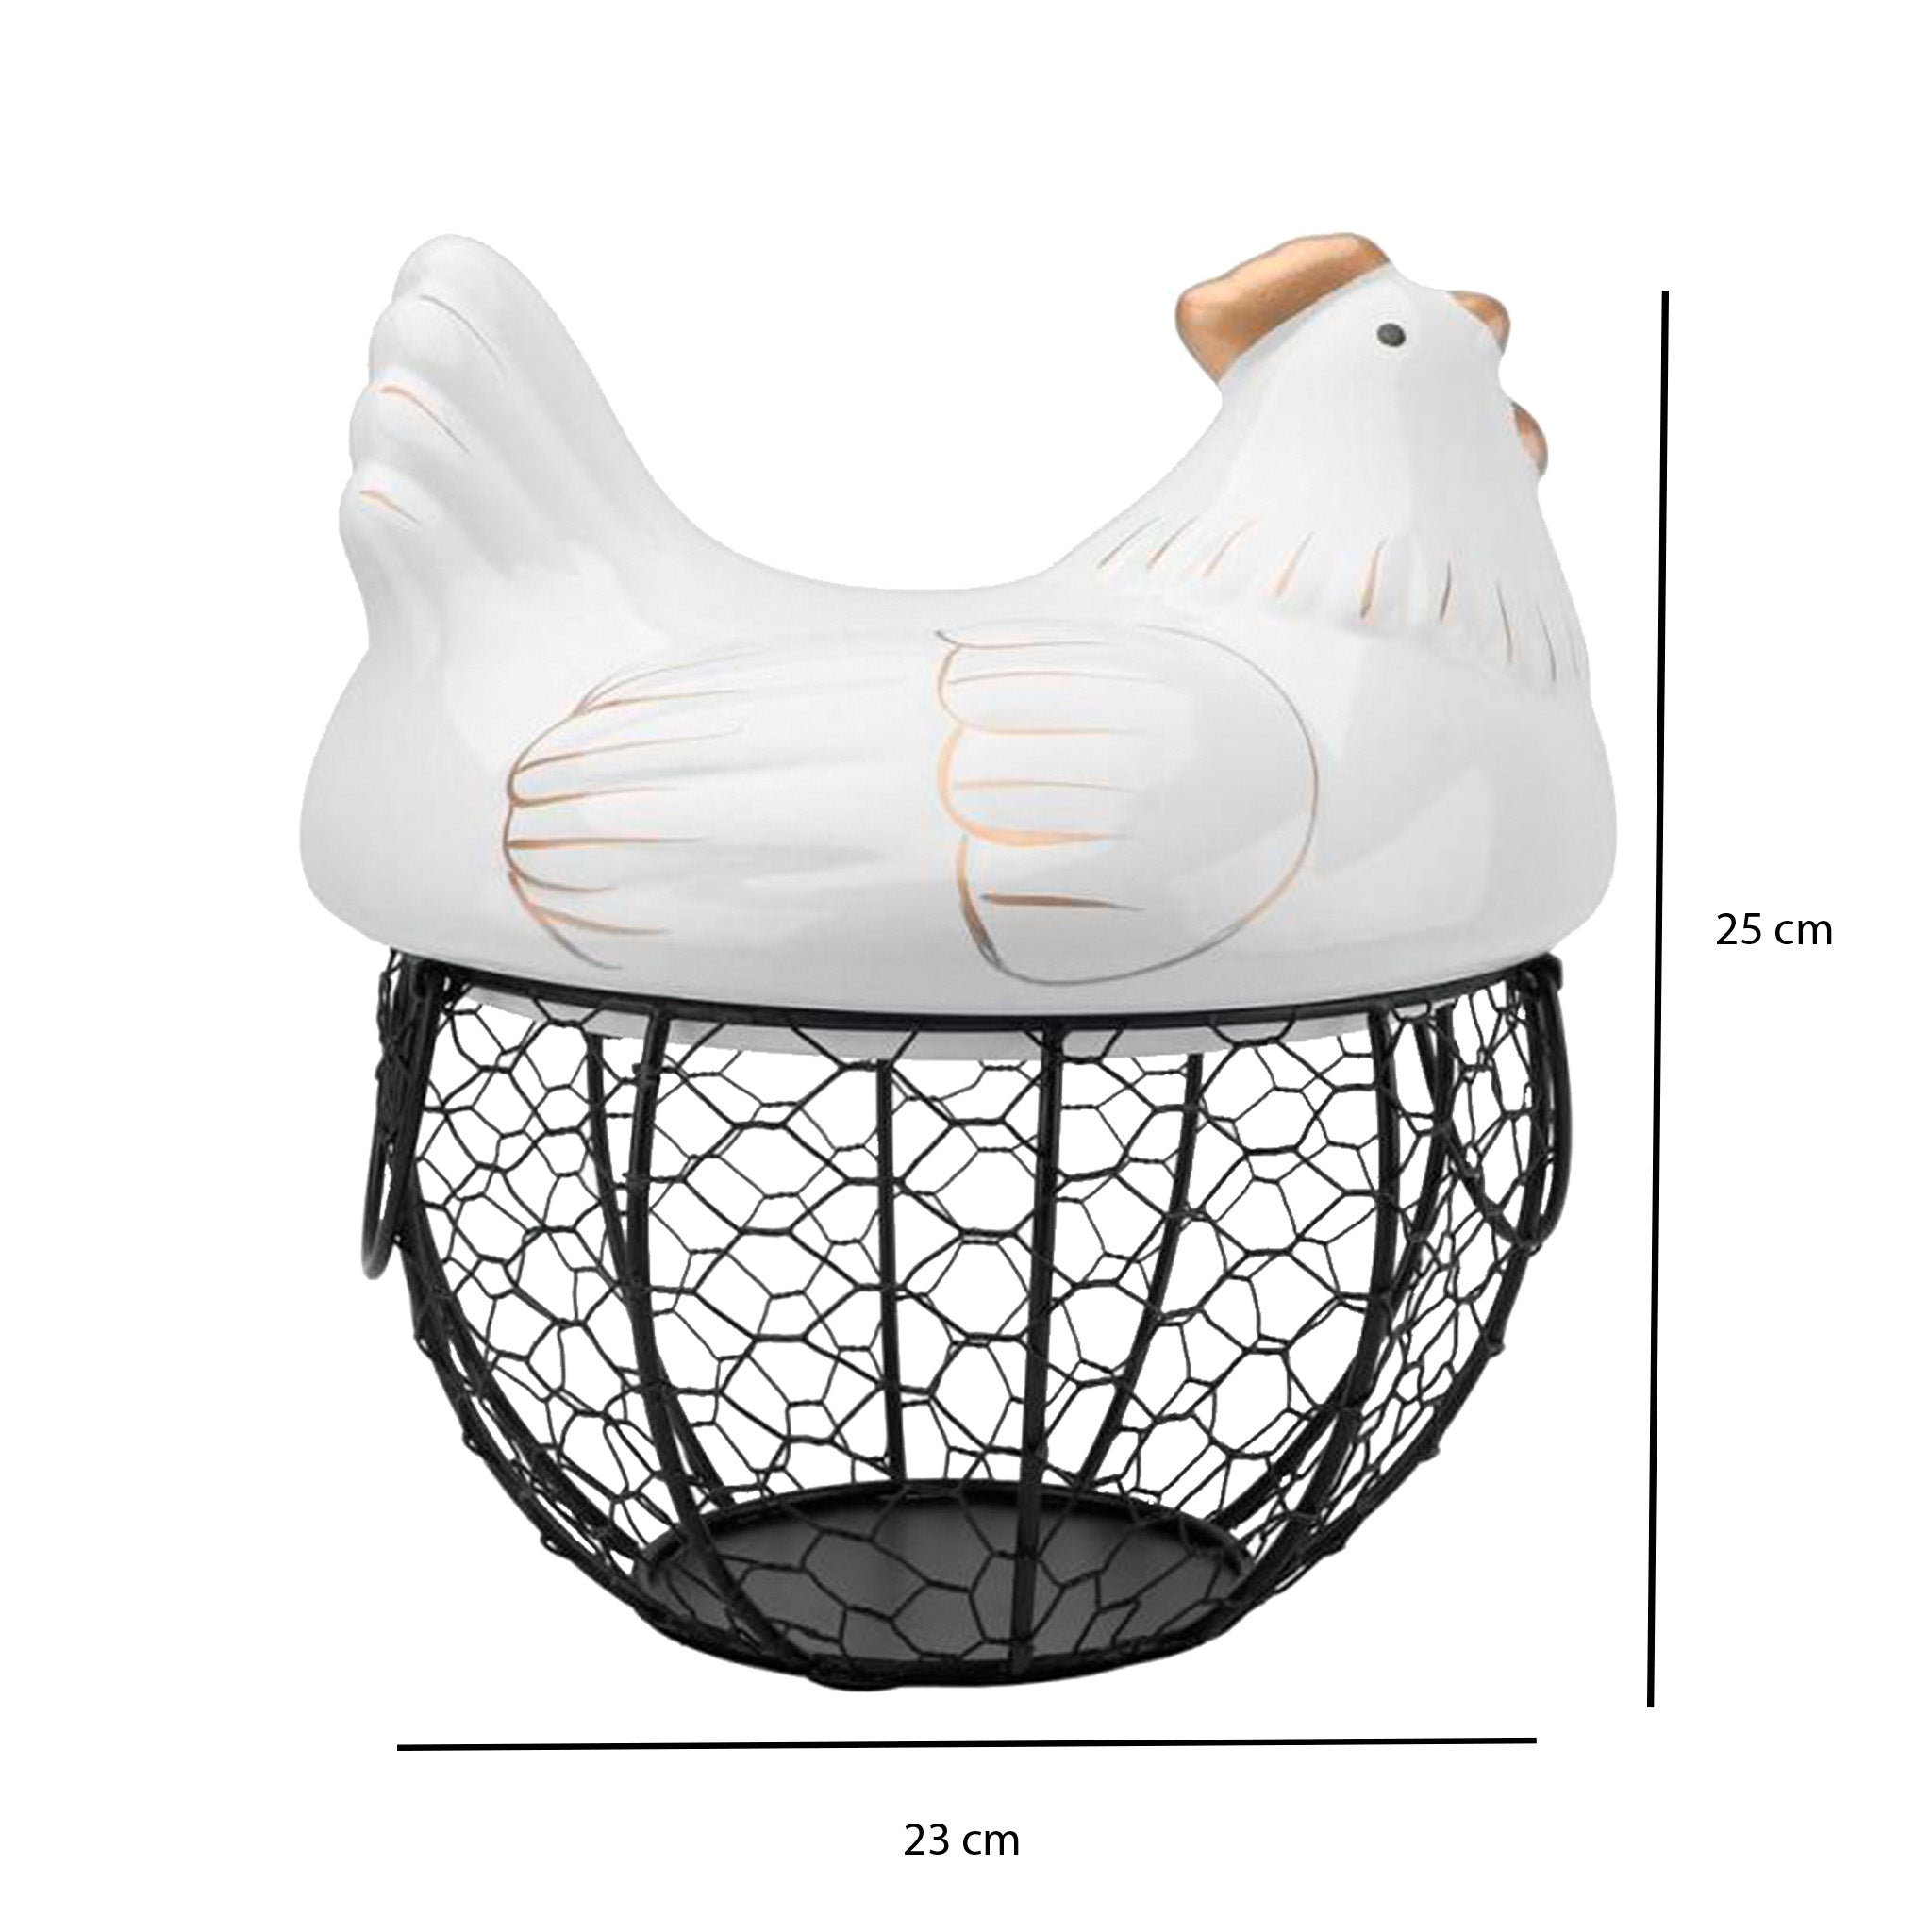 Chicken, egg basket